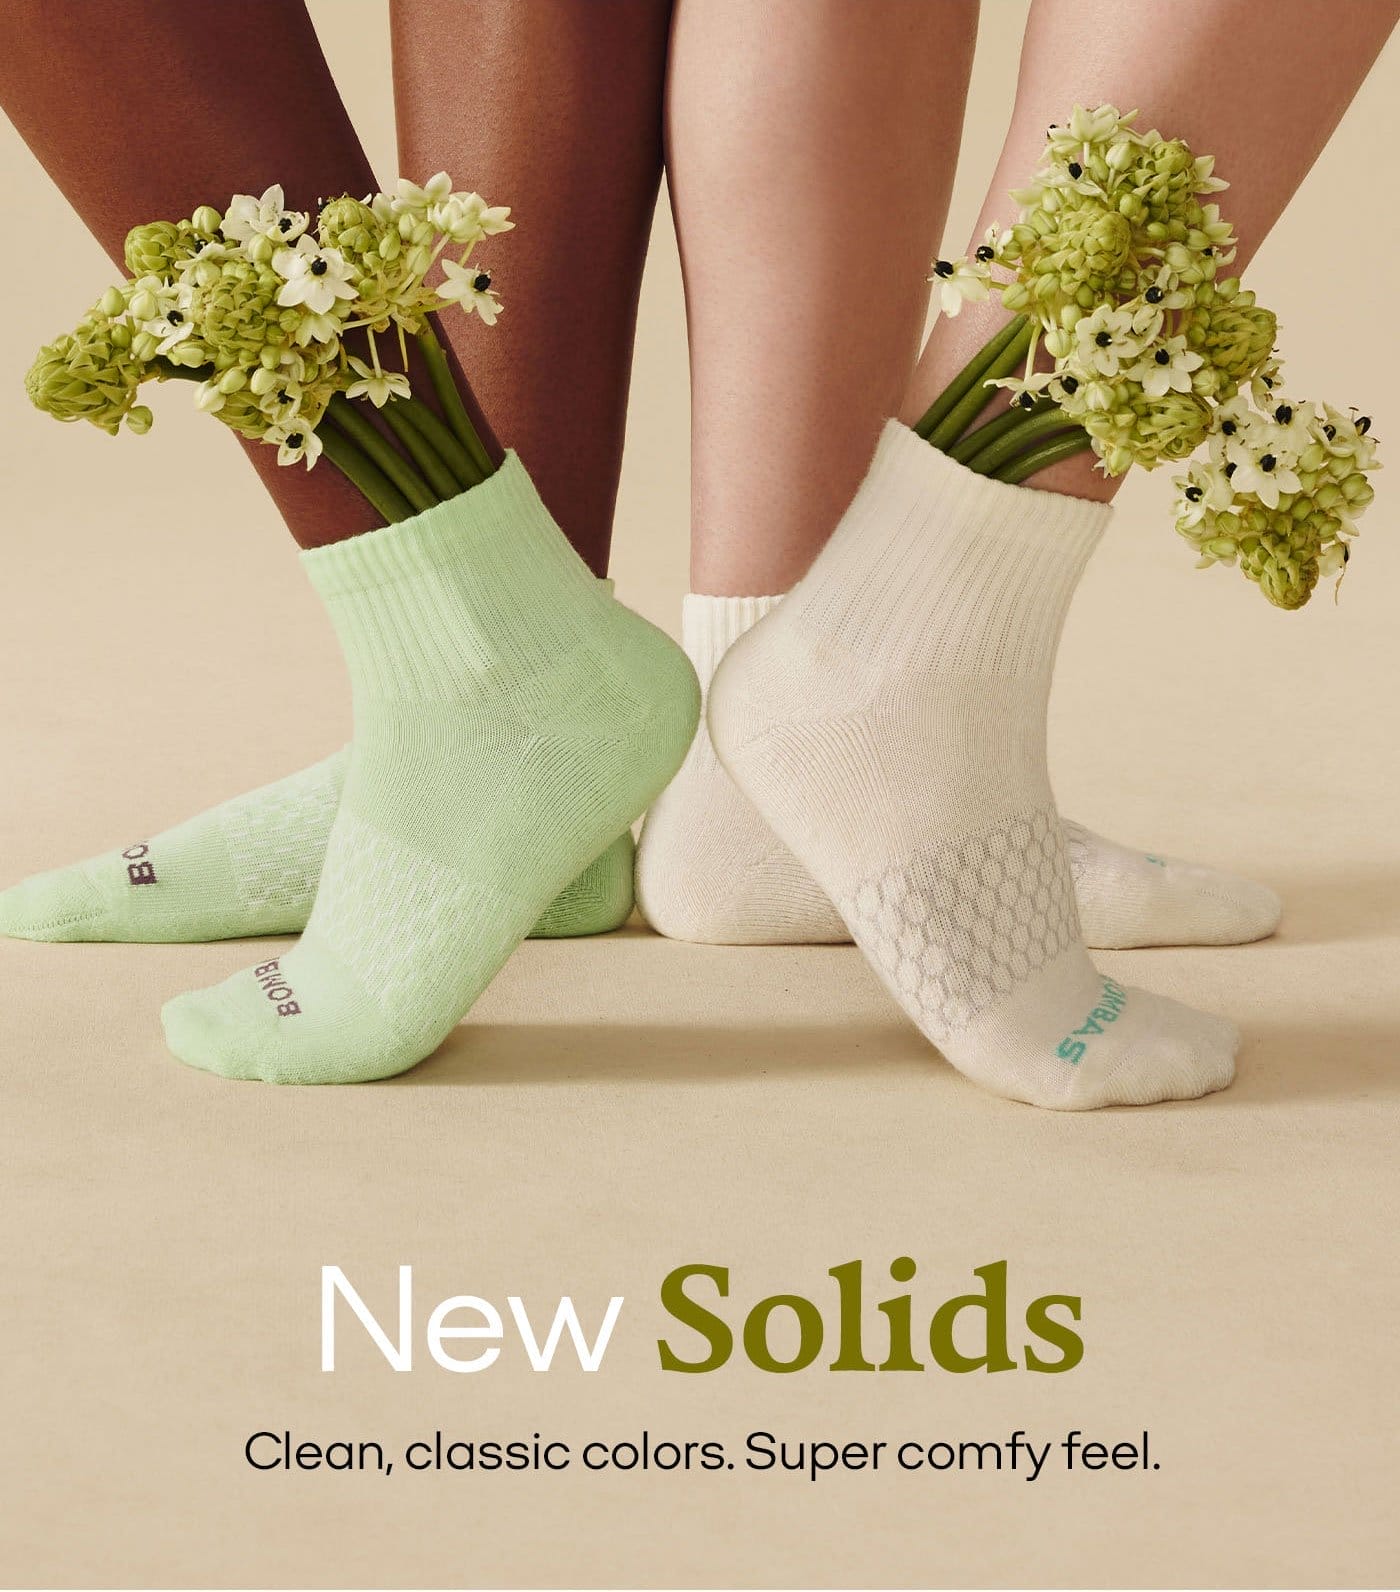 New Solids | Clean, classic colors. Super comfy feel.